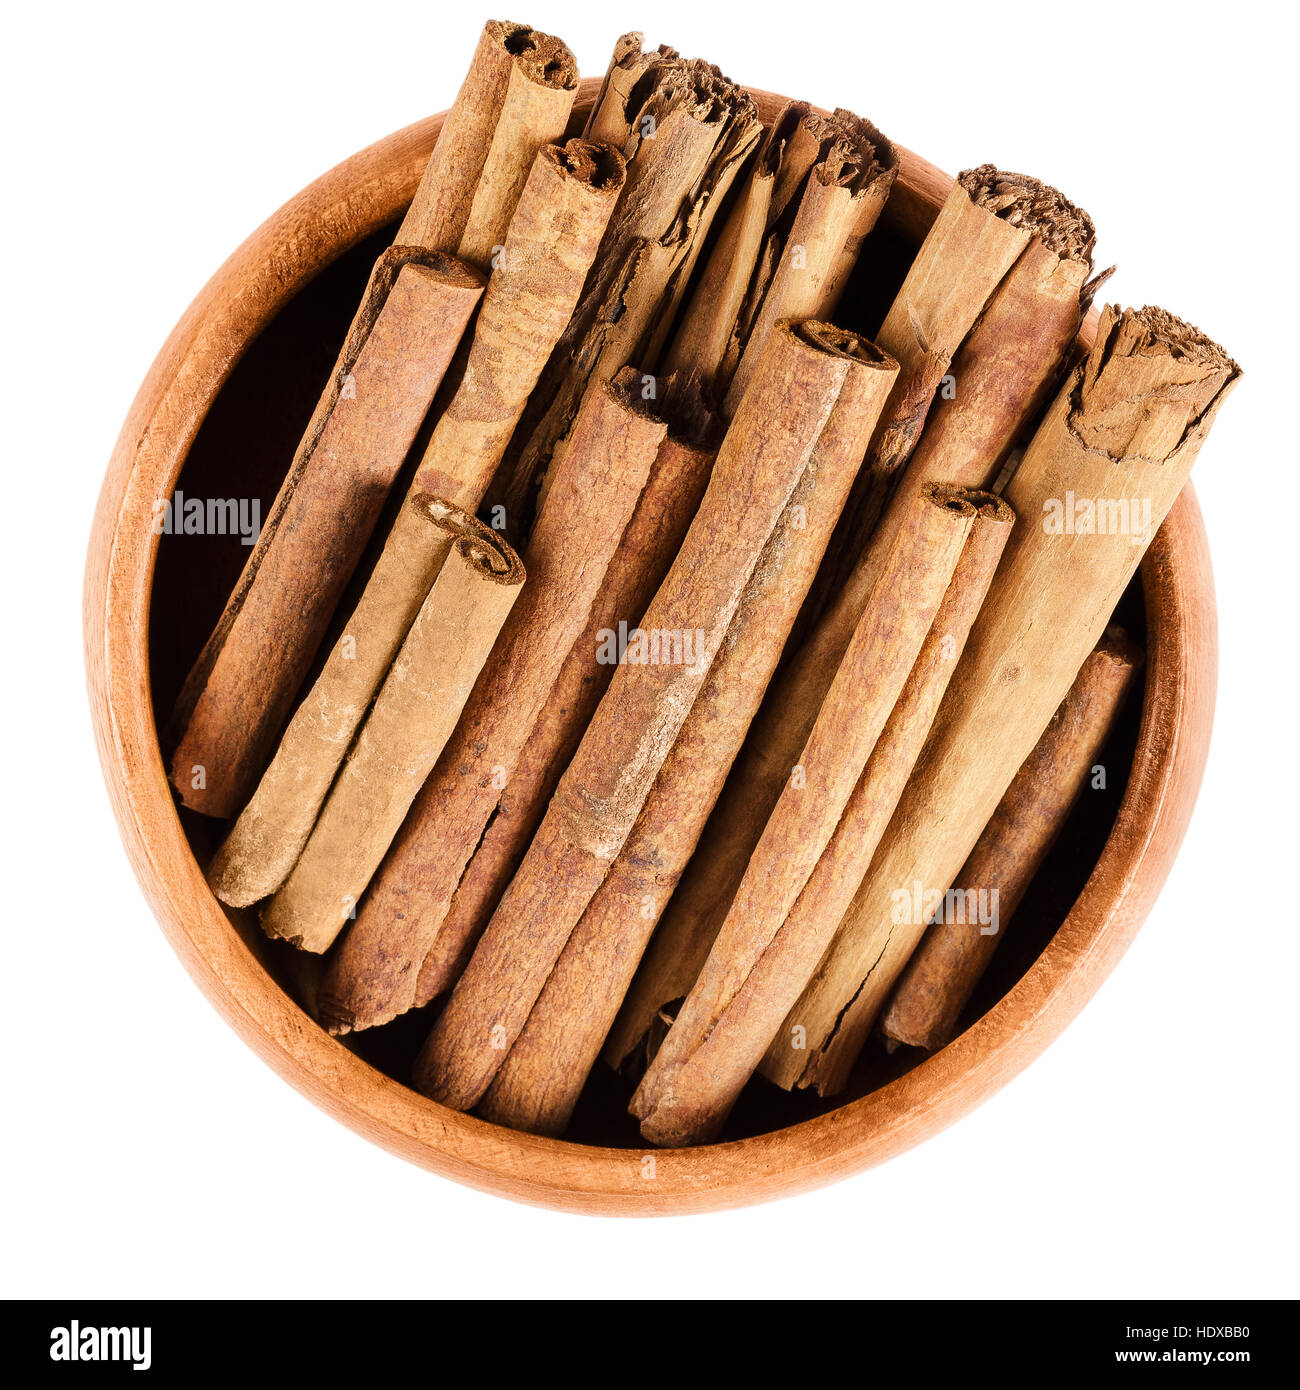 Bastoncini di cannella in ciotola di legno. Materie brown quills dalla corteccia interna di Cinnamomum. Cassia, spezie aromatiche utilizzate come condimento. Foto Stock